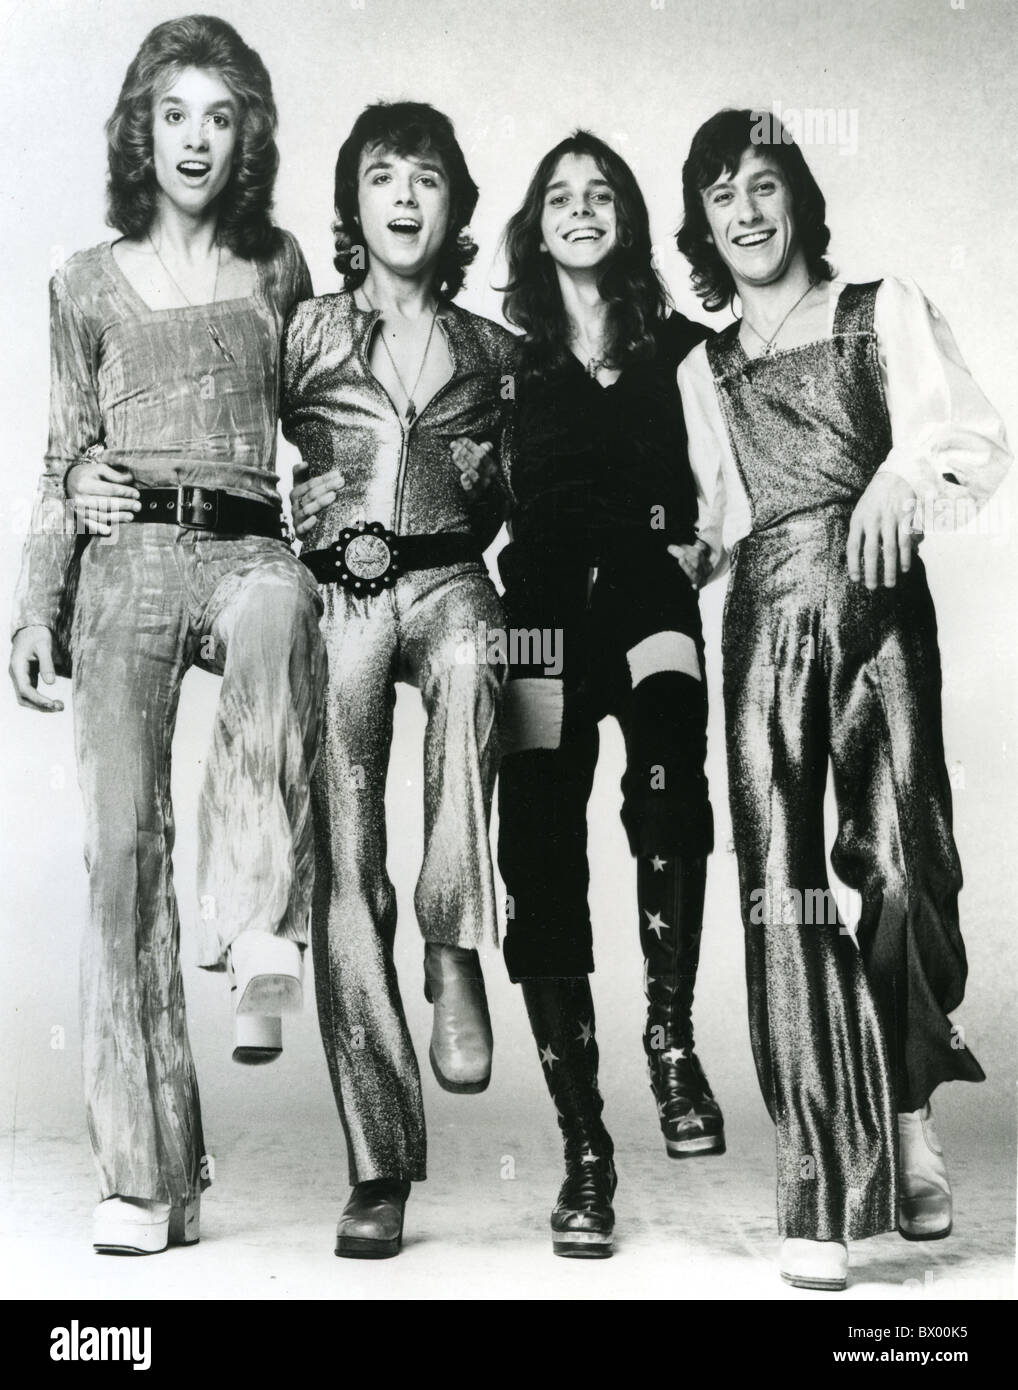 Bonjour photo de promotion du groupe de glam rock britannique de 1972 sur l : Bob Bradbury, Jeff Allen, Keith Marshall et Vic Faulkner Banque D'Images